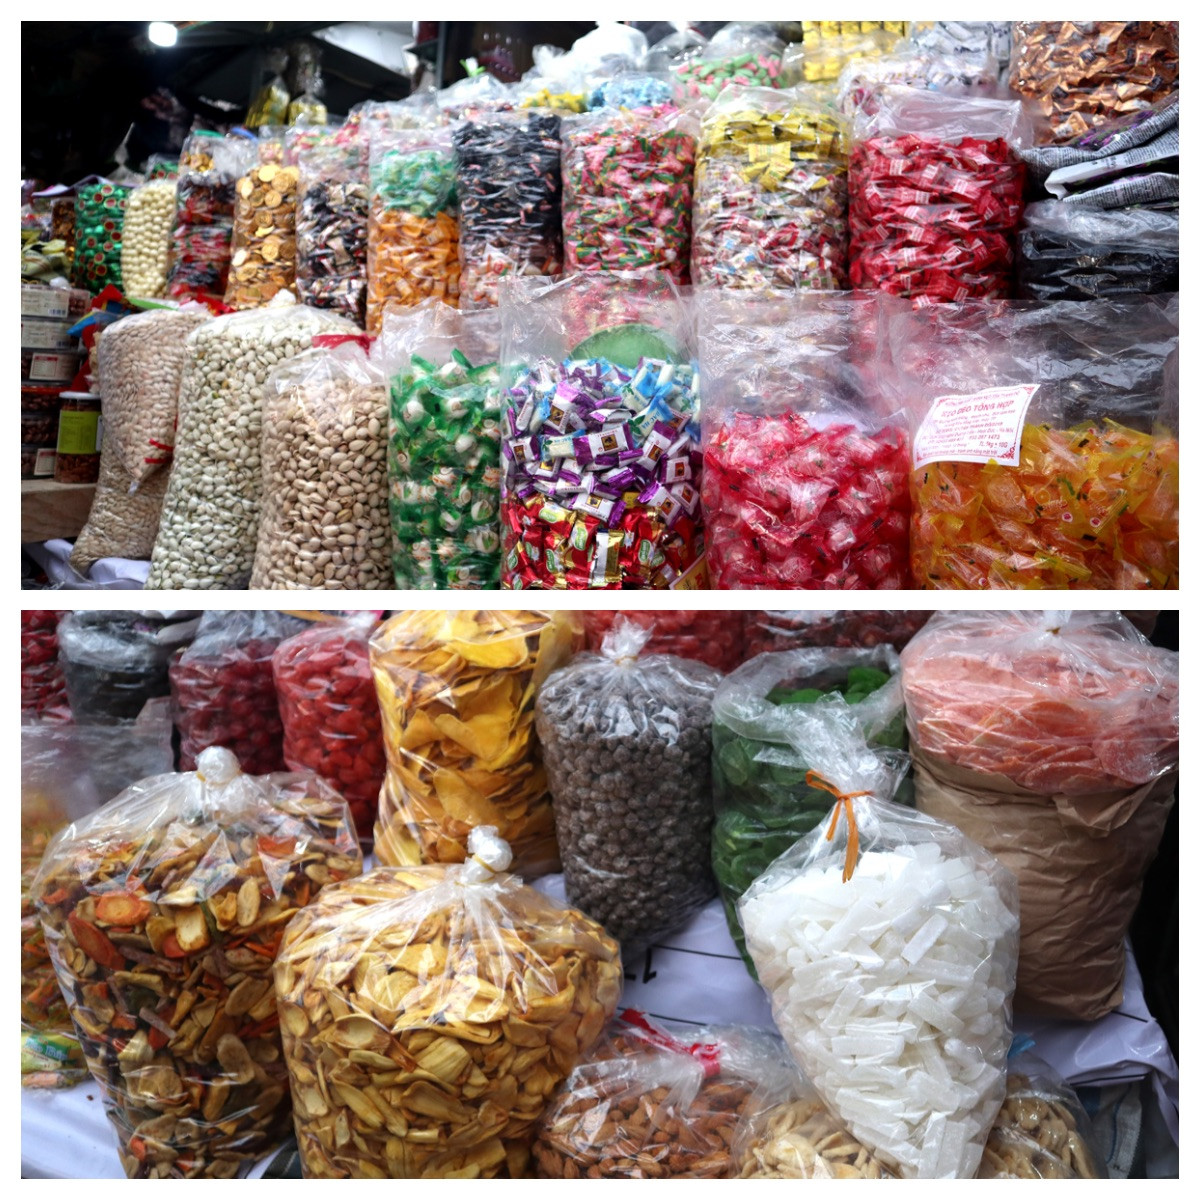 Bánh kẹo mứt trôi nổi bày bán tràn lan trên thị trường. Ảnh: T.P